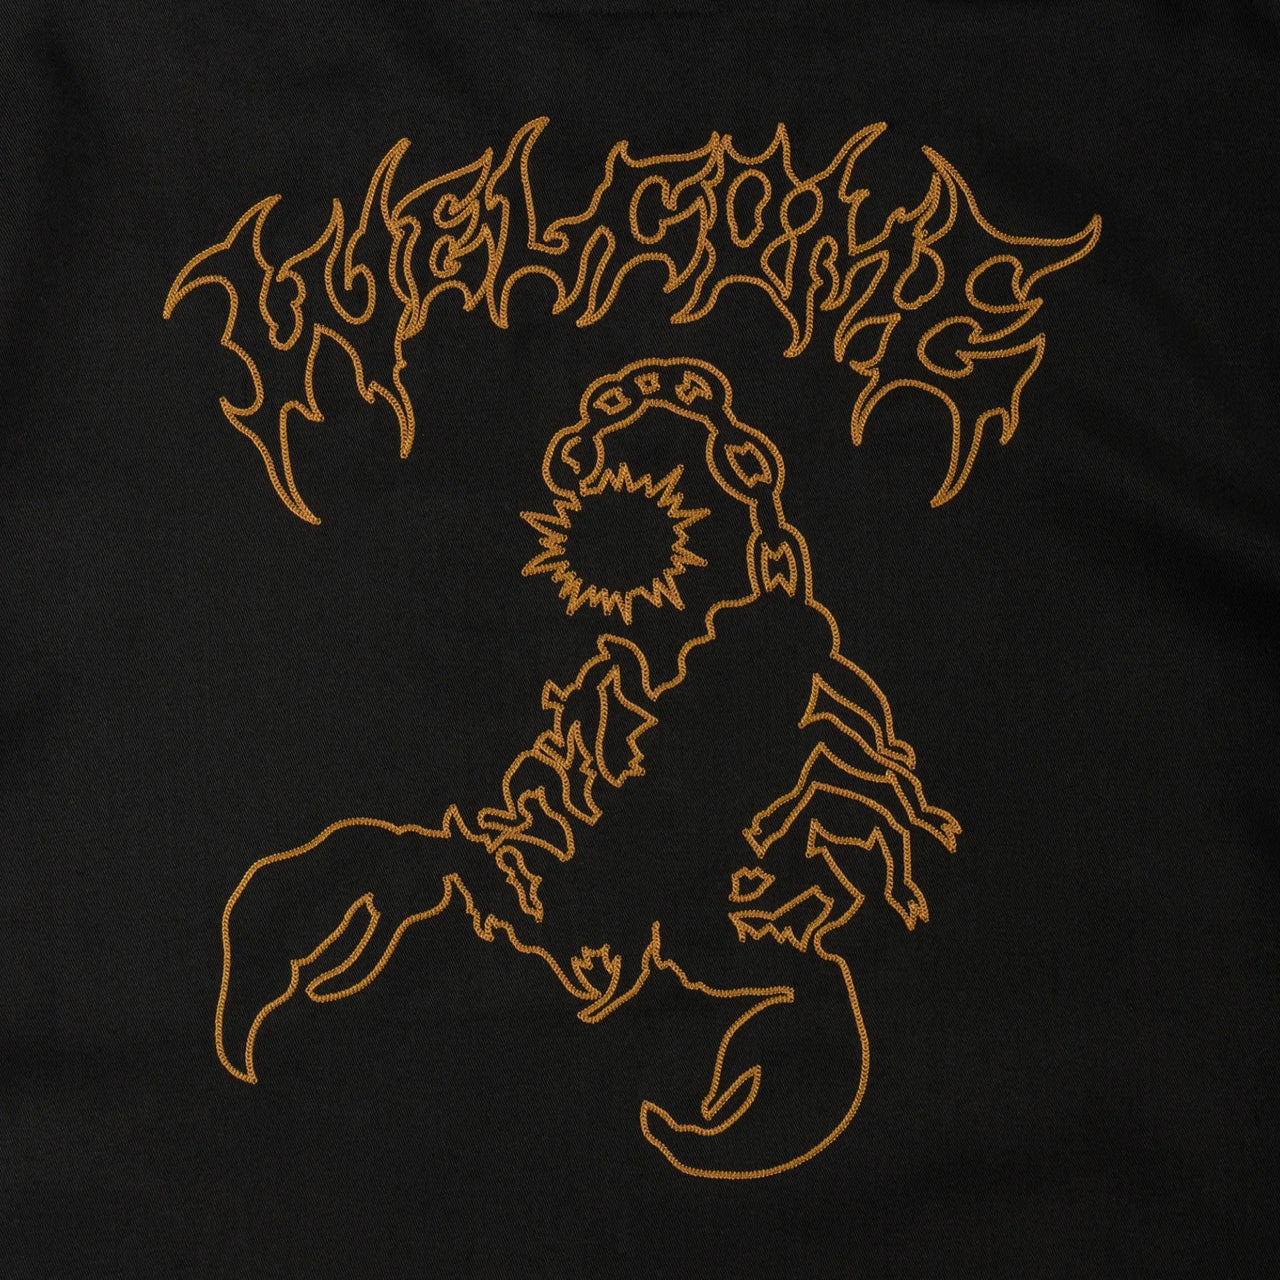 Welcome Venom Chain Stitch Work Shirt - Black image 4